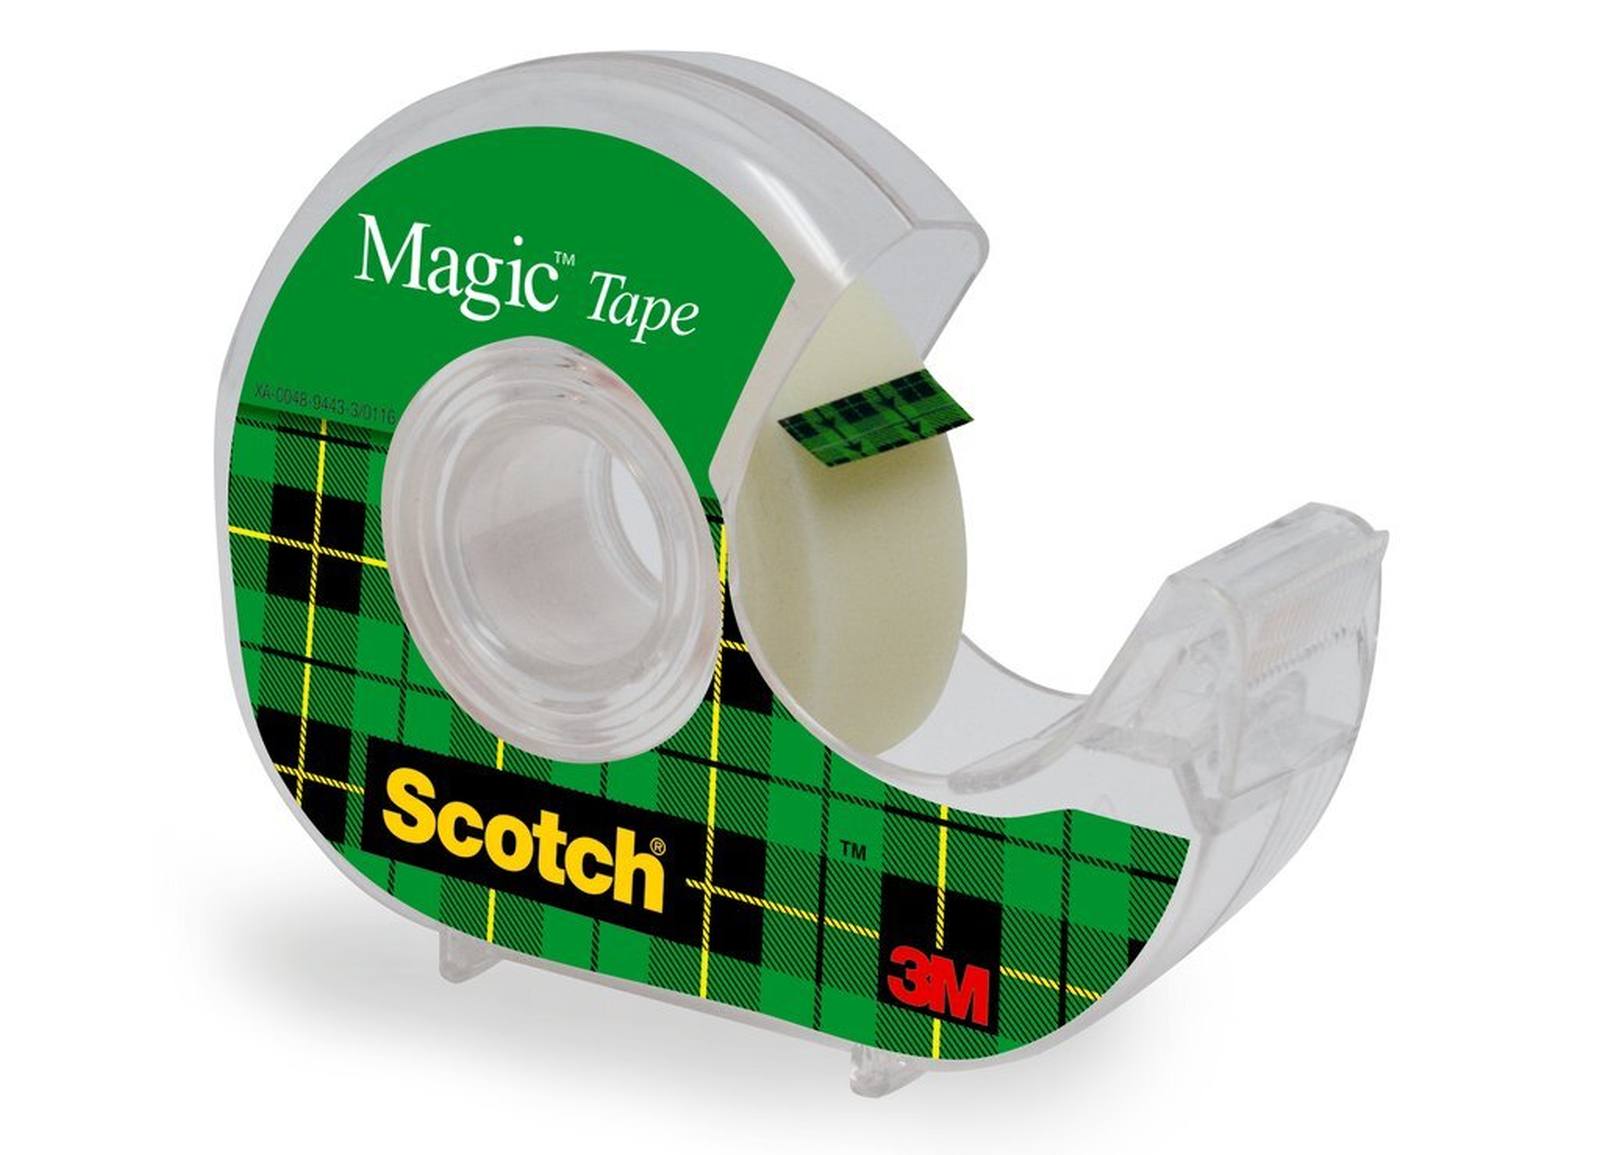 nastro adesivo 3M Scotch Magic 1 rotolo 19 mm x 25 m + dispenser manuale